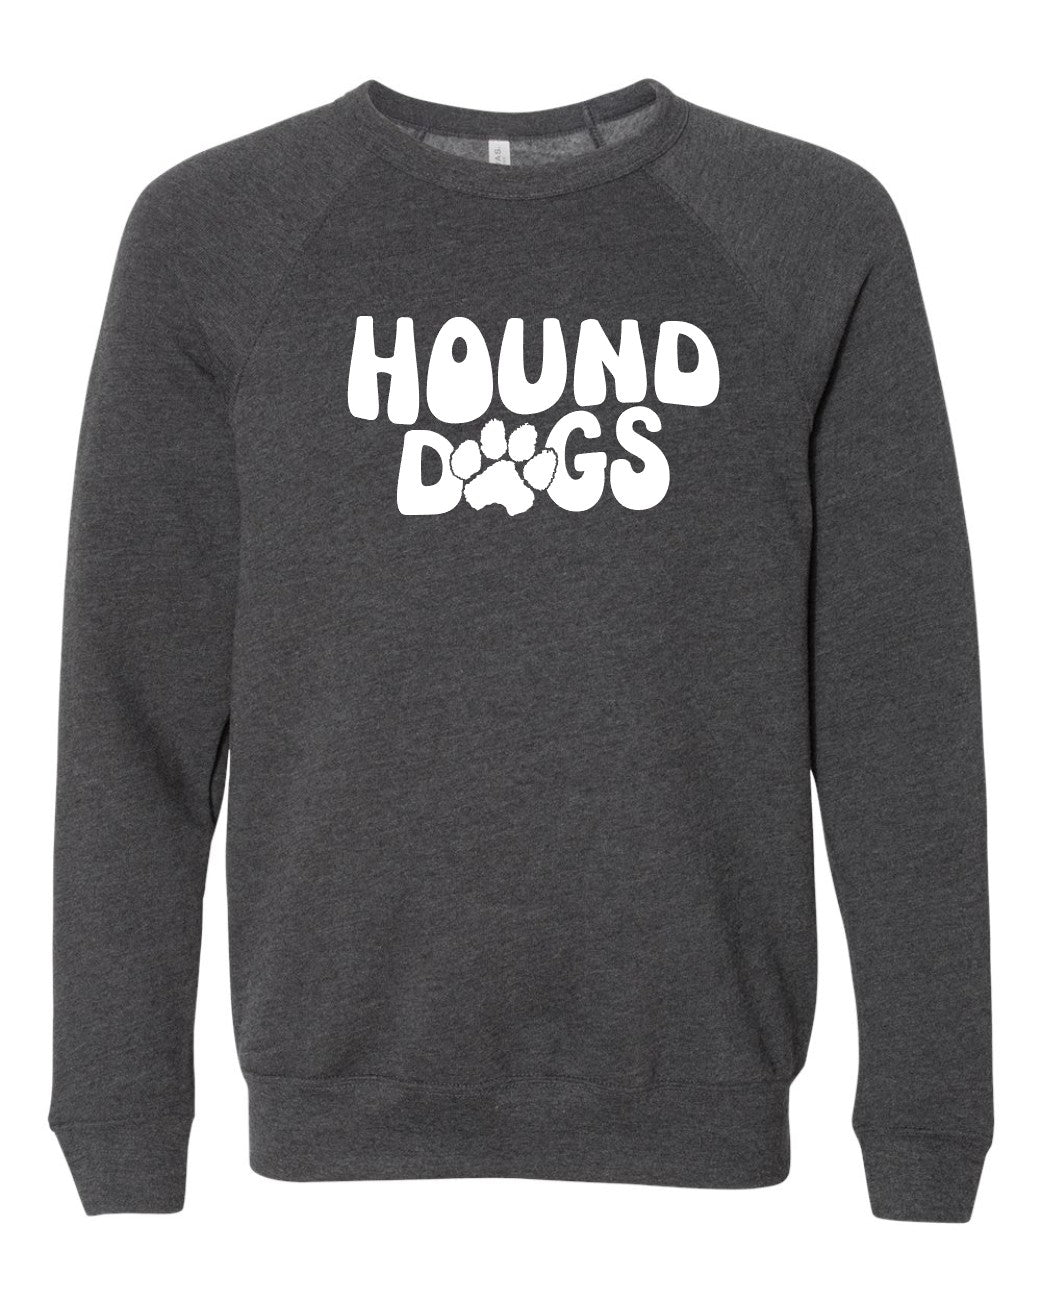 Hound Dogs Wave Premium Crewneck Sweatshirt